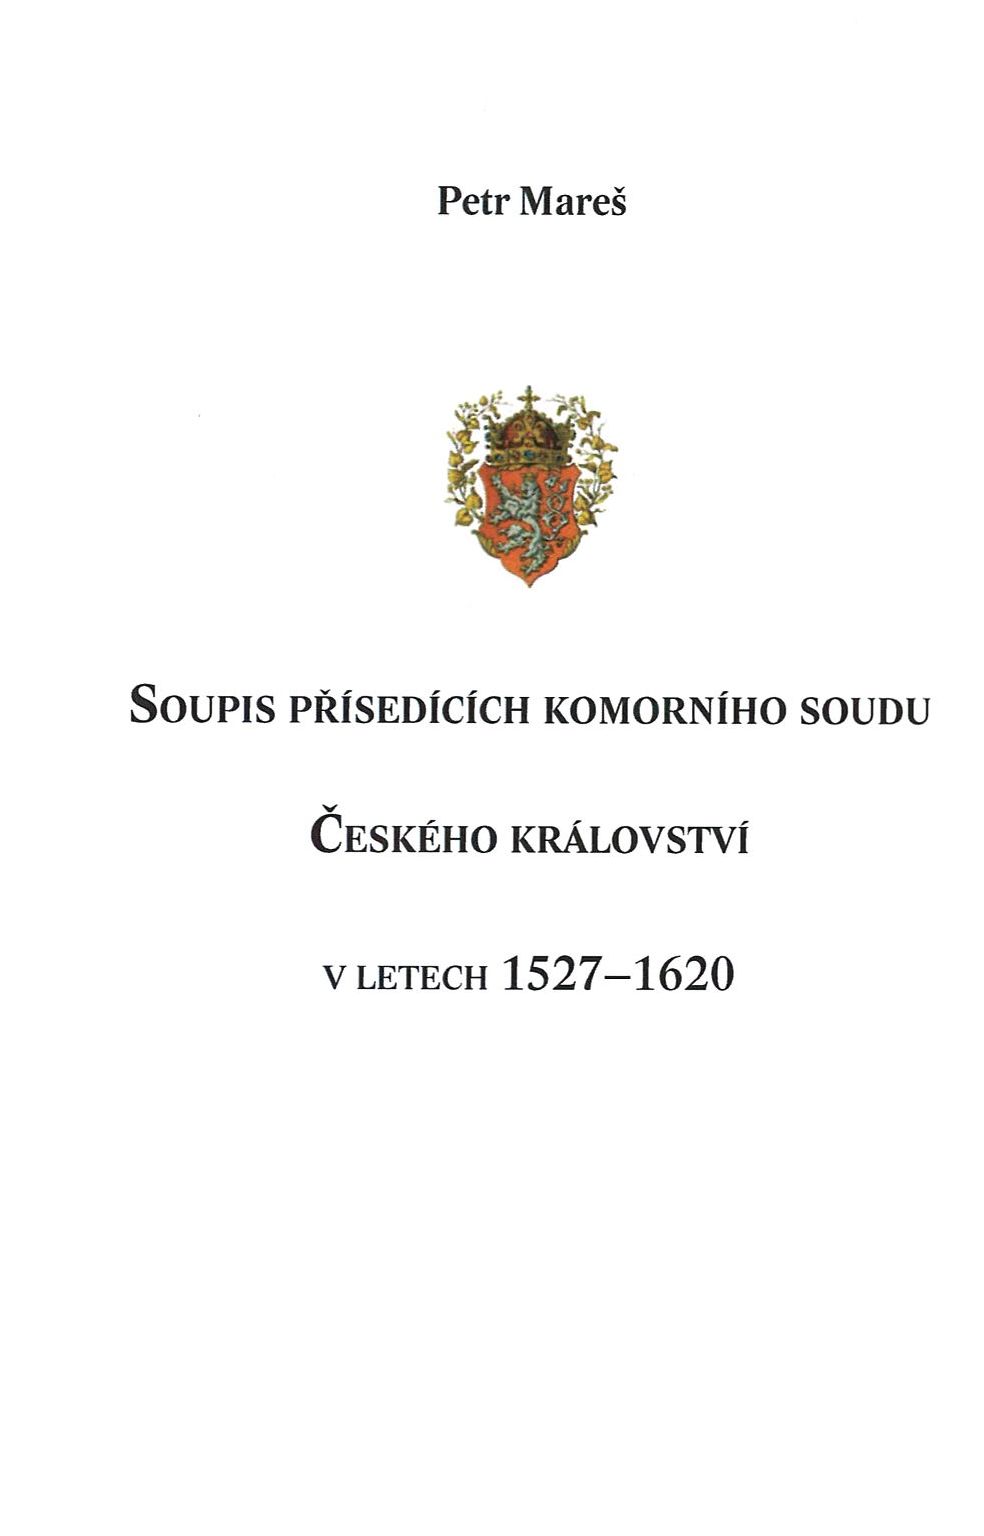 Soupis přísedících komorního soudu Českého království v letech 1527–1620